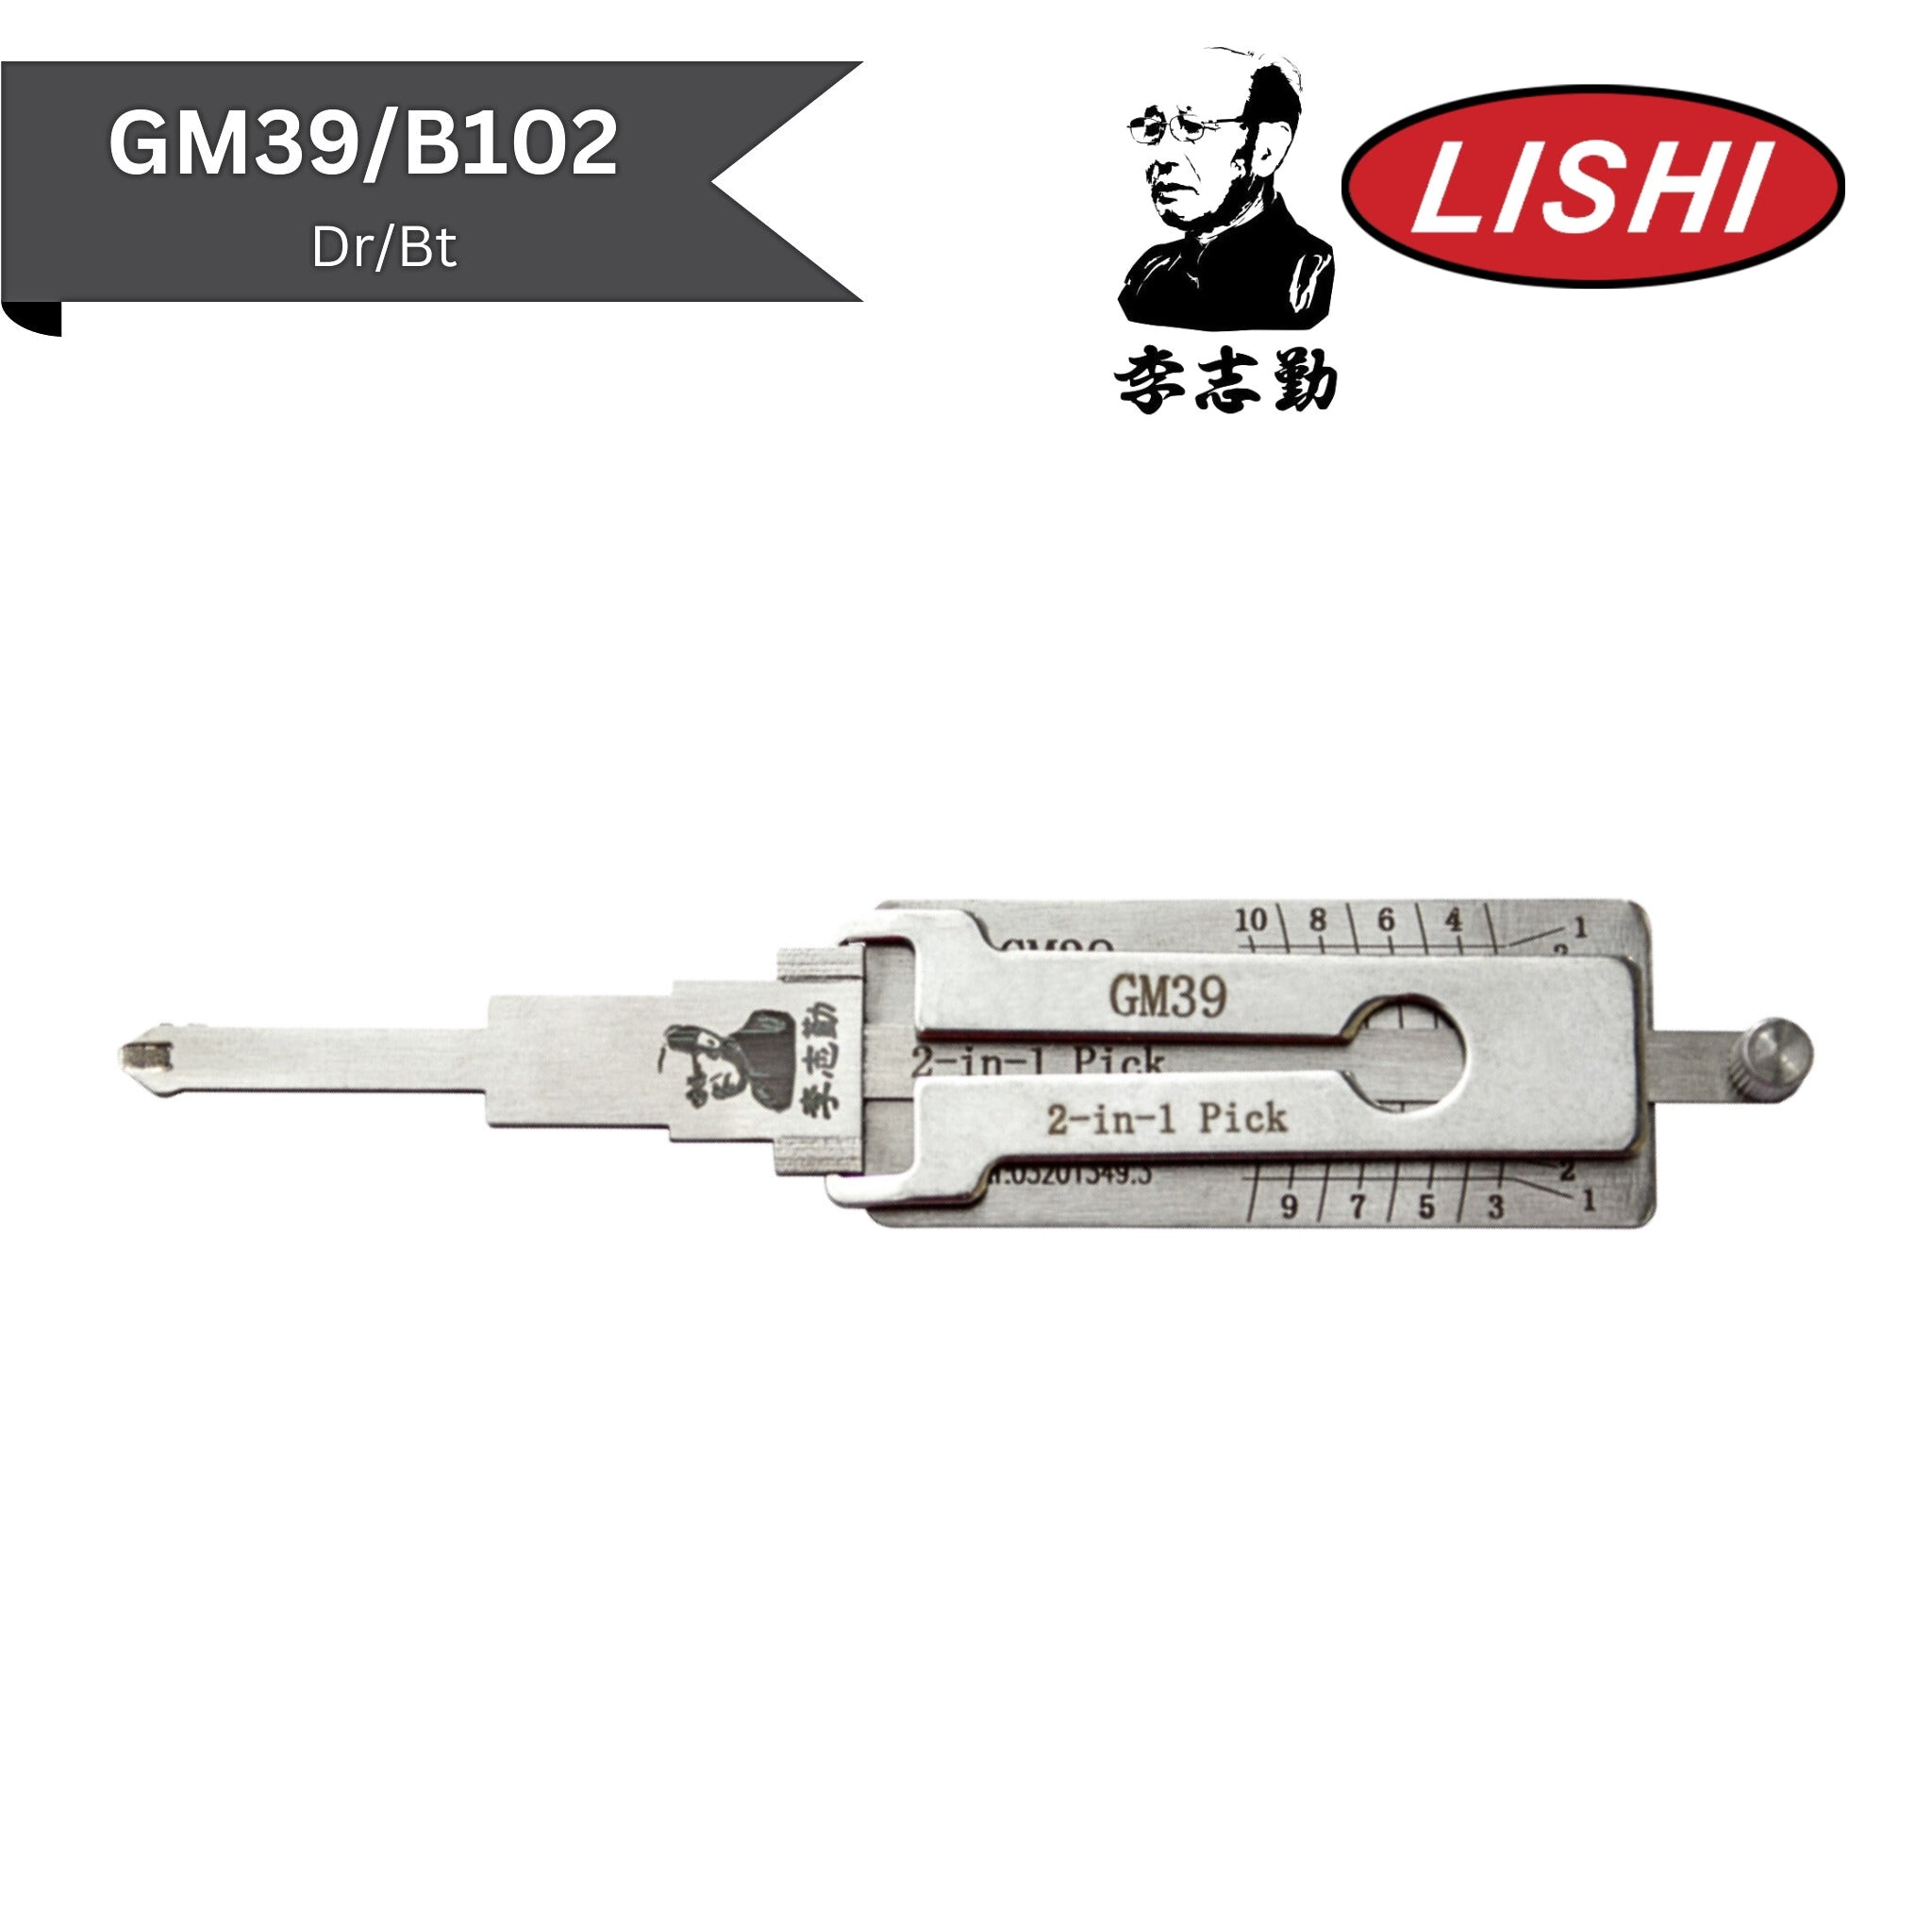 Original Lishi - GM GM39/B102 (Dr/Bt) 10-Cut - 2-In-1 Pick/Decoder - AG